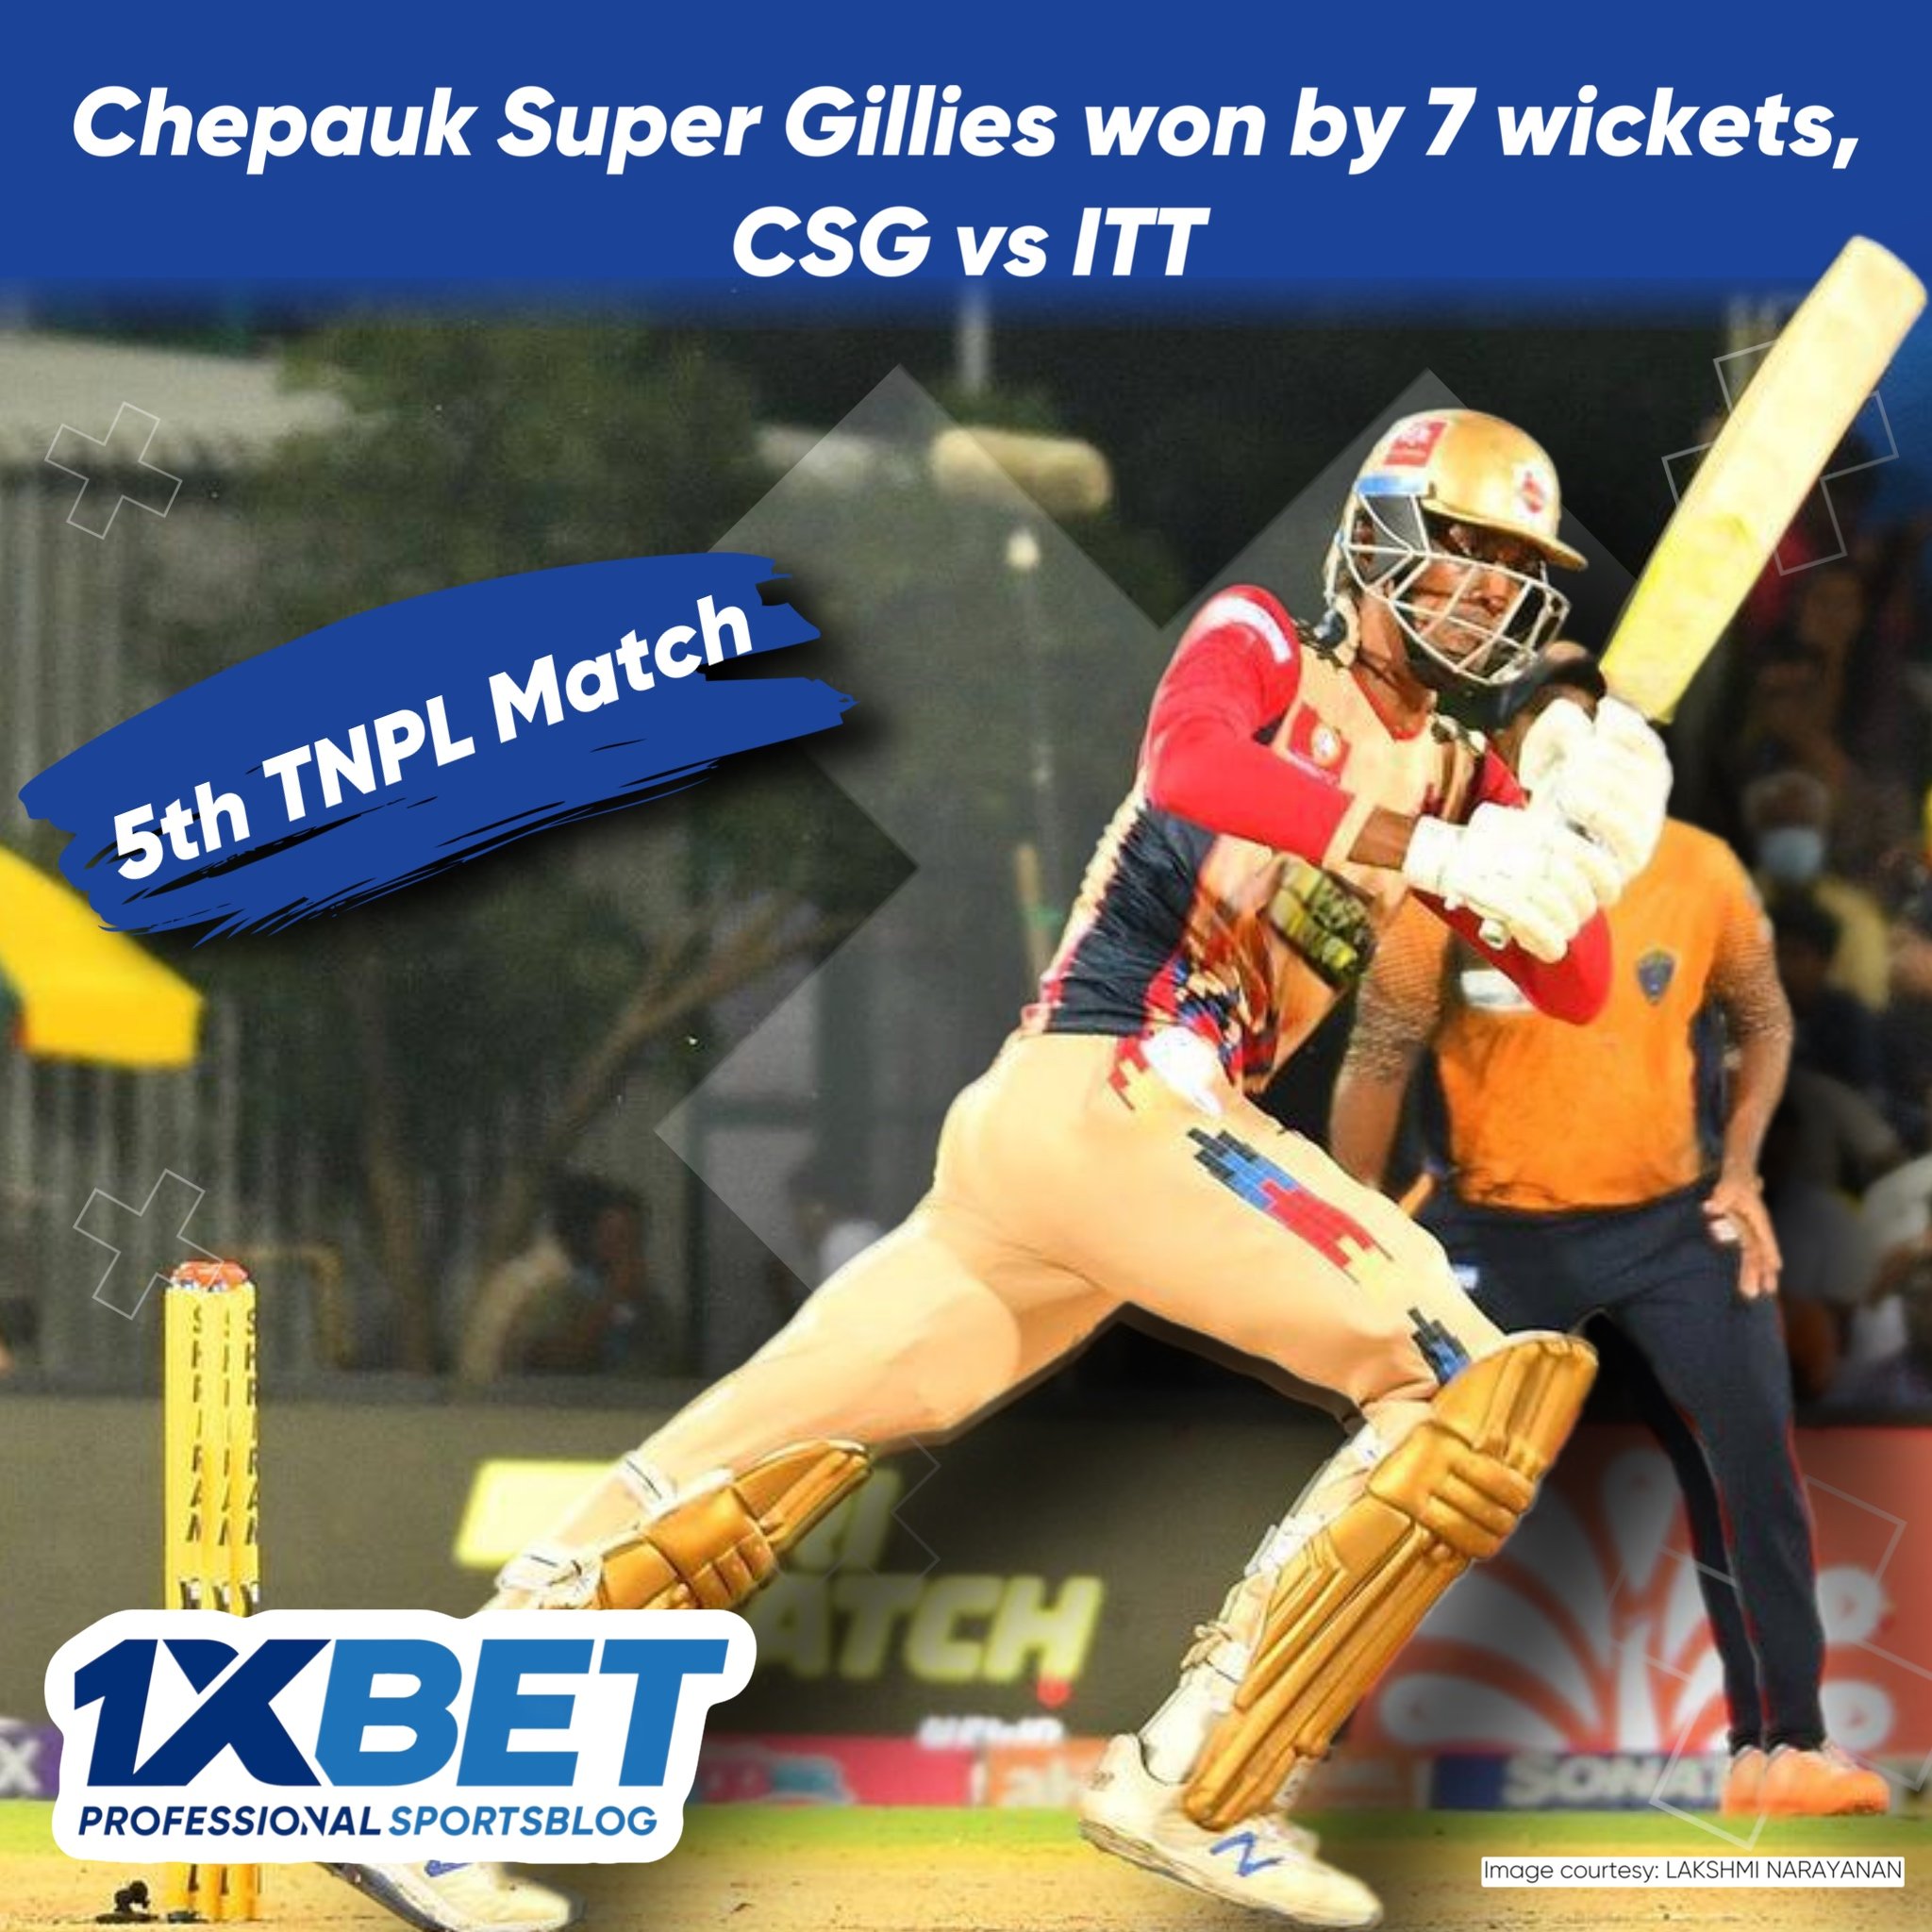 Chepauk Super Gillies won by 7 wickets